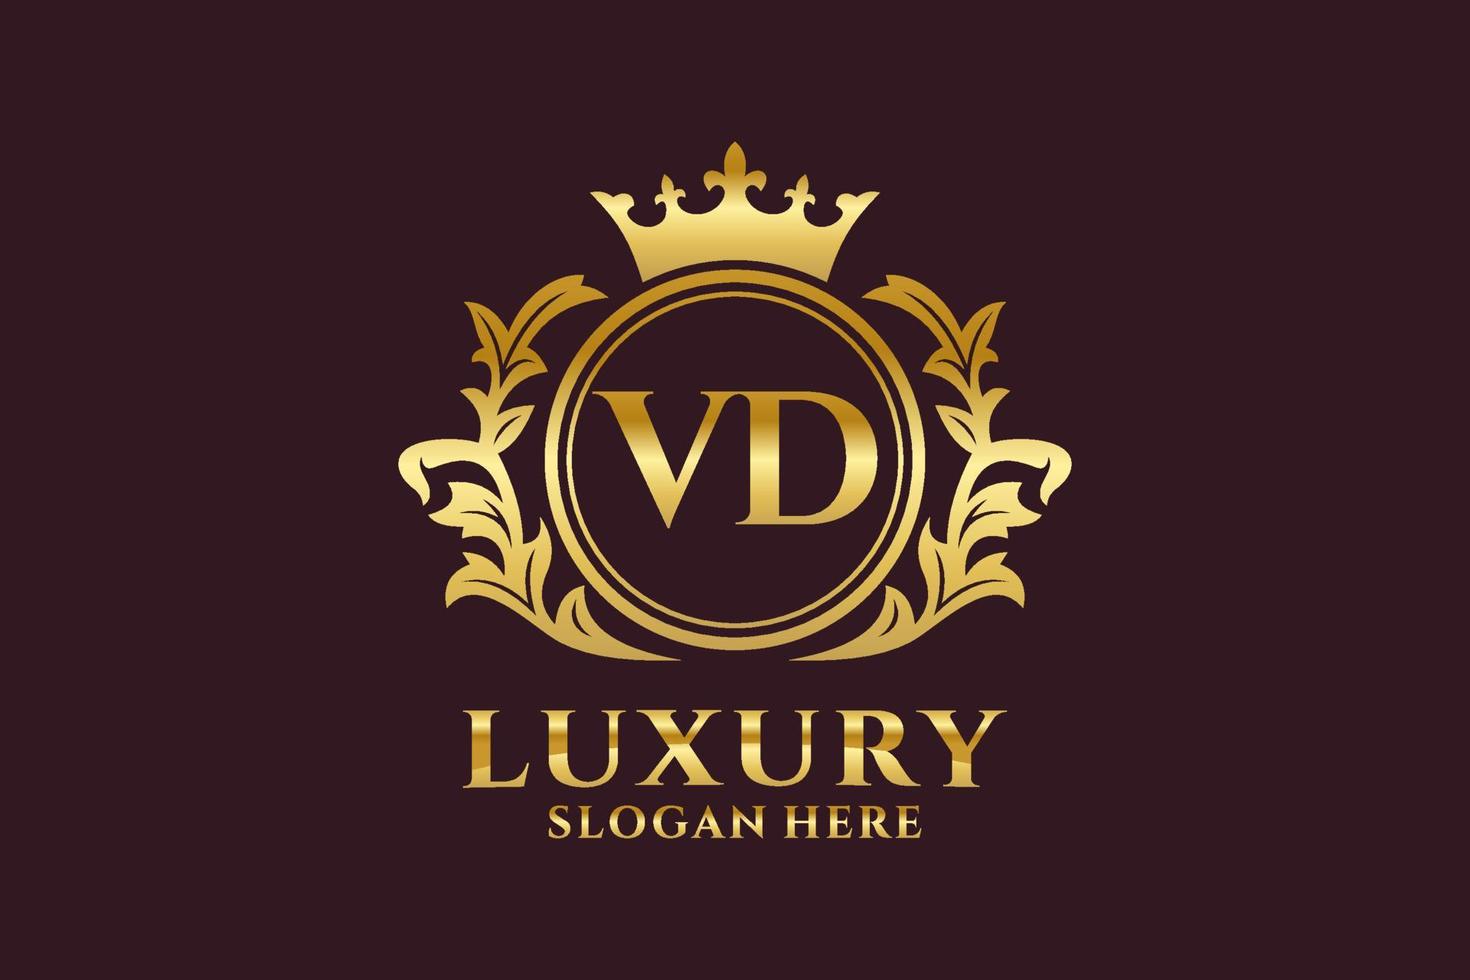 plantilla de logotipo de lujo real de letra vd inicial en arte vectorial para proyectos de marca de lujo y otras ilustraciones vectoriales. vector